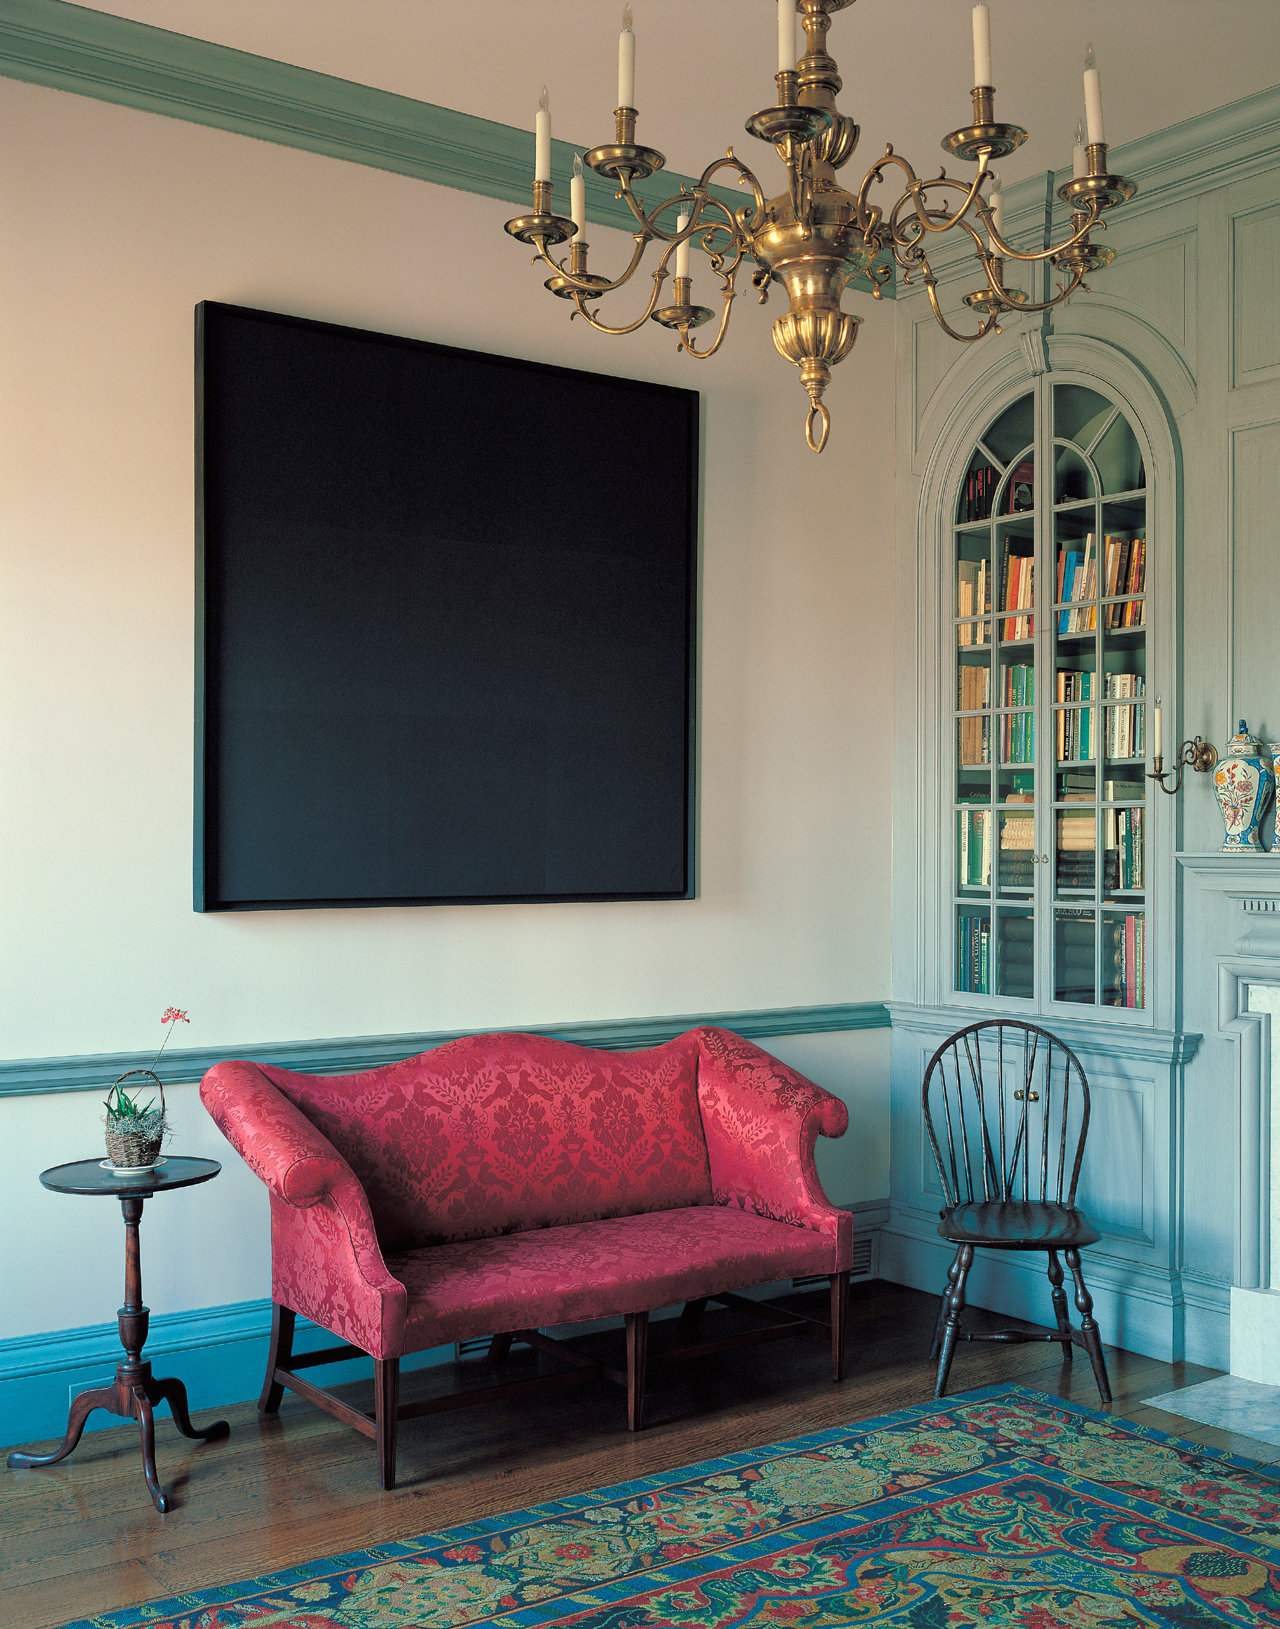 La casa de los Brants en Maine es un estudio de la decoración American Domestic del XVIII: un cuadro de Ad Reinhardt contrasta con la lámpara de araña de latón y con la alfombra georgiana.